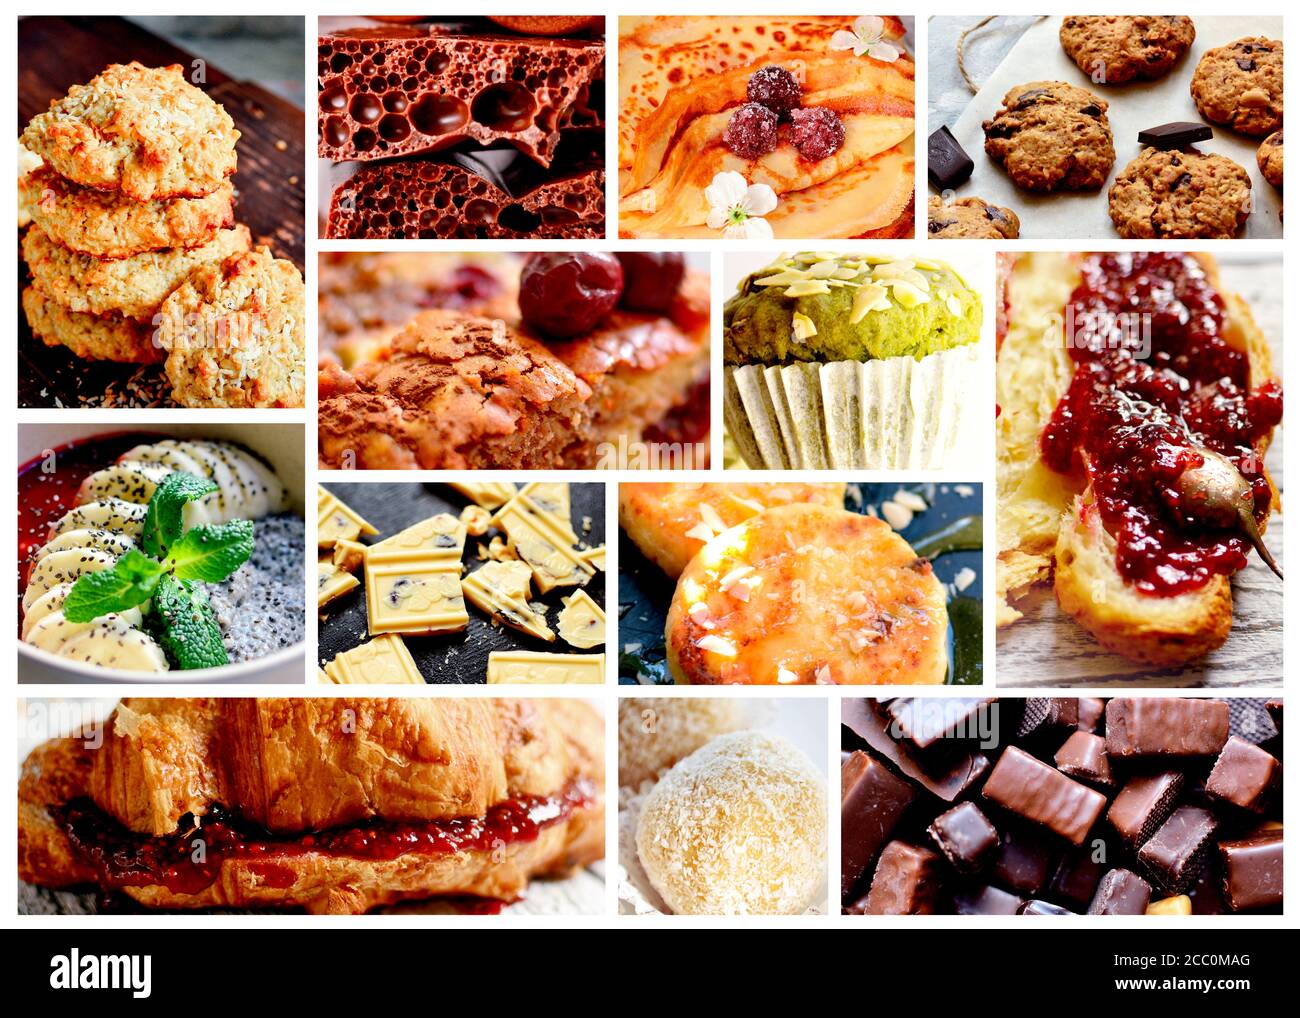 Collage von süßen Speisen. Croissants, Marmelade, Kaffee, süße Desserts und Getränke. Eine Auswahl an köstlichen Speisen. Stockfoto